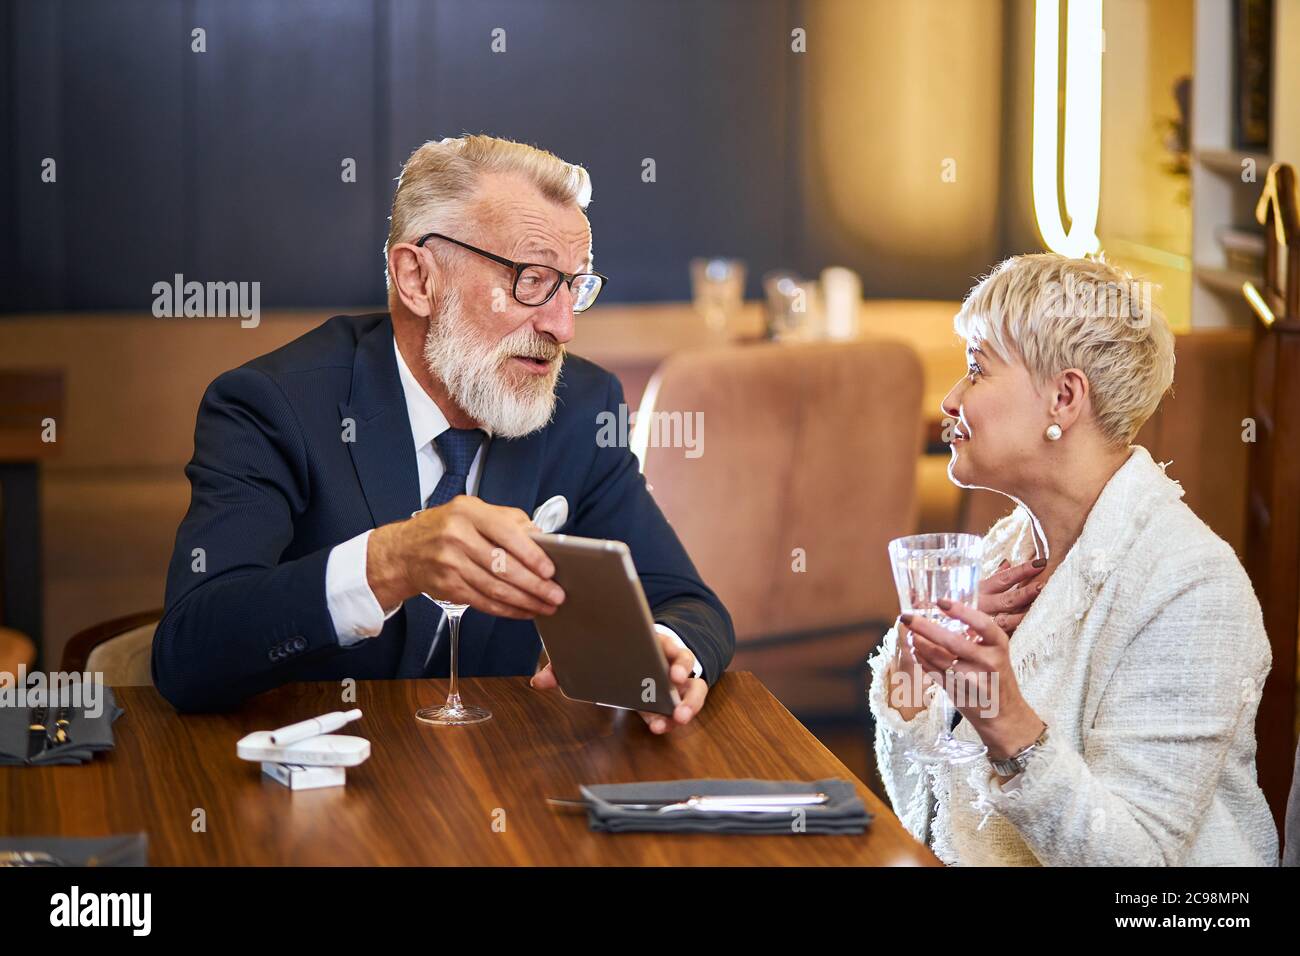 Attraktive Senioren verwenden moderne Technologien, Tablet im Restaurant. Grauhaariger Mann in Smoking, Brille und Frau in weißem Blazer Stockfoto